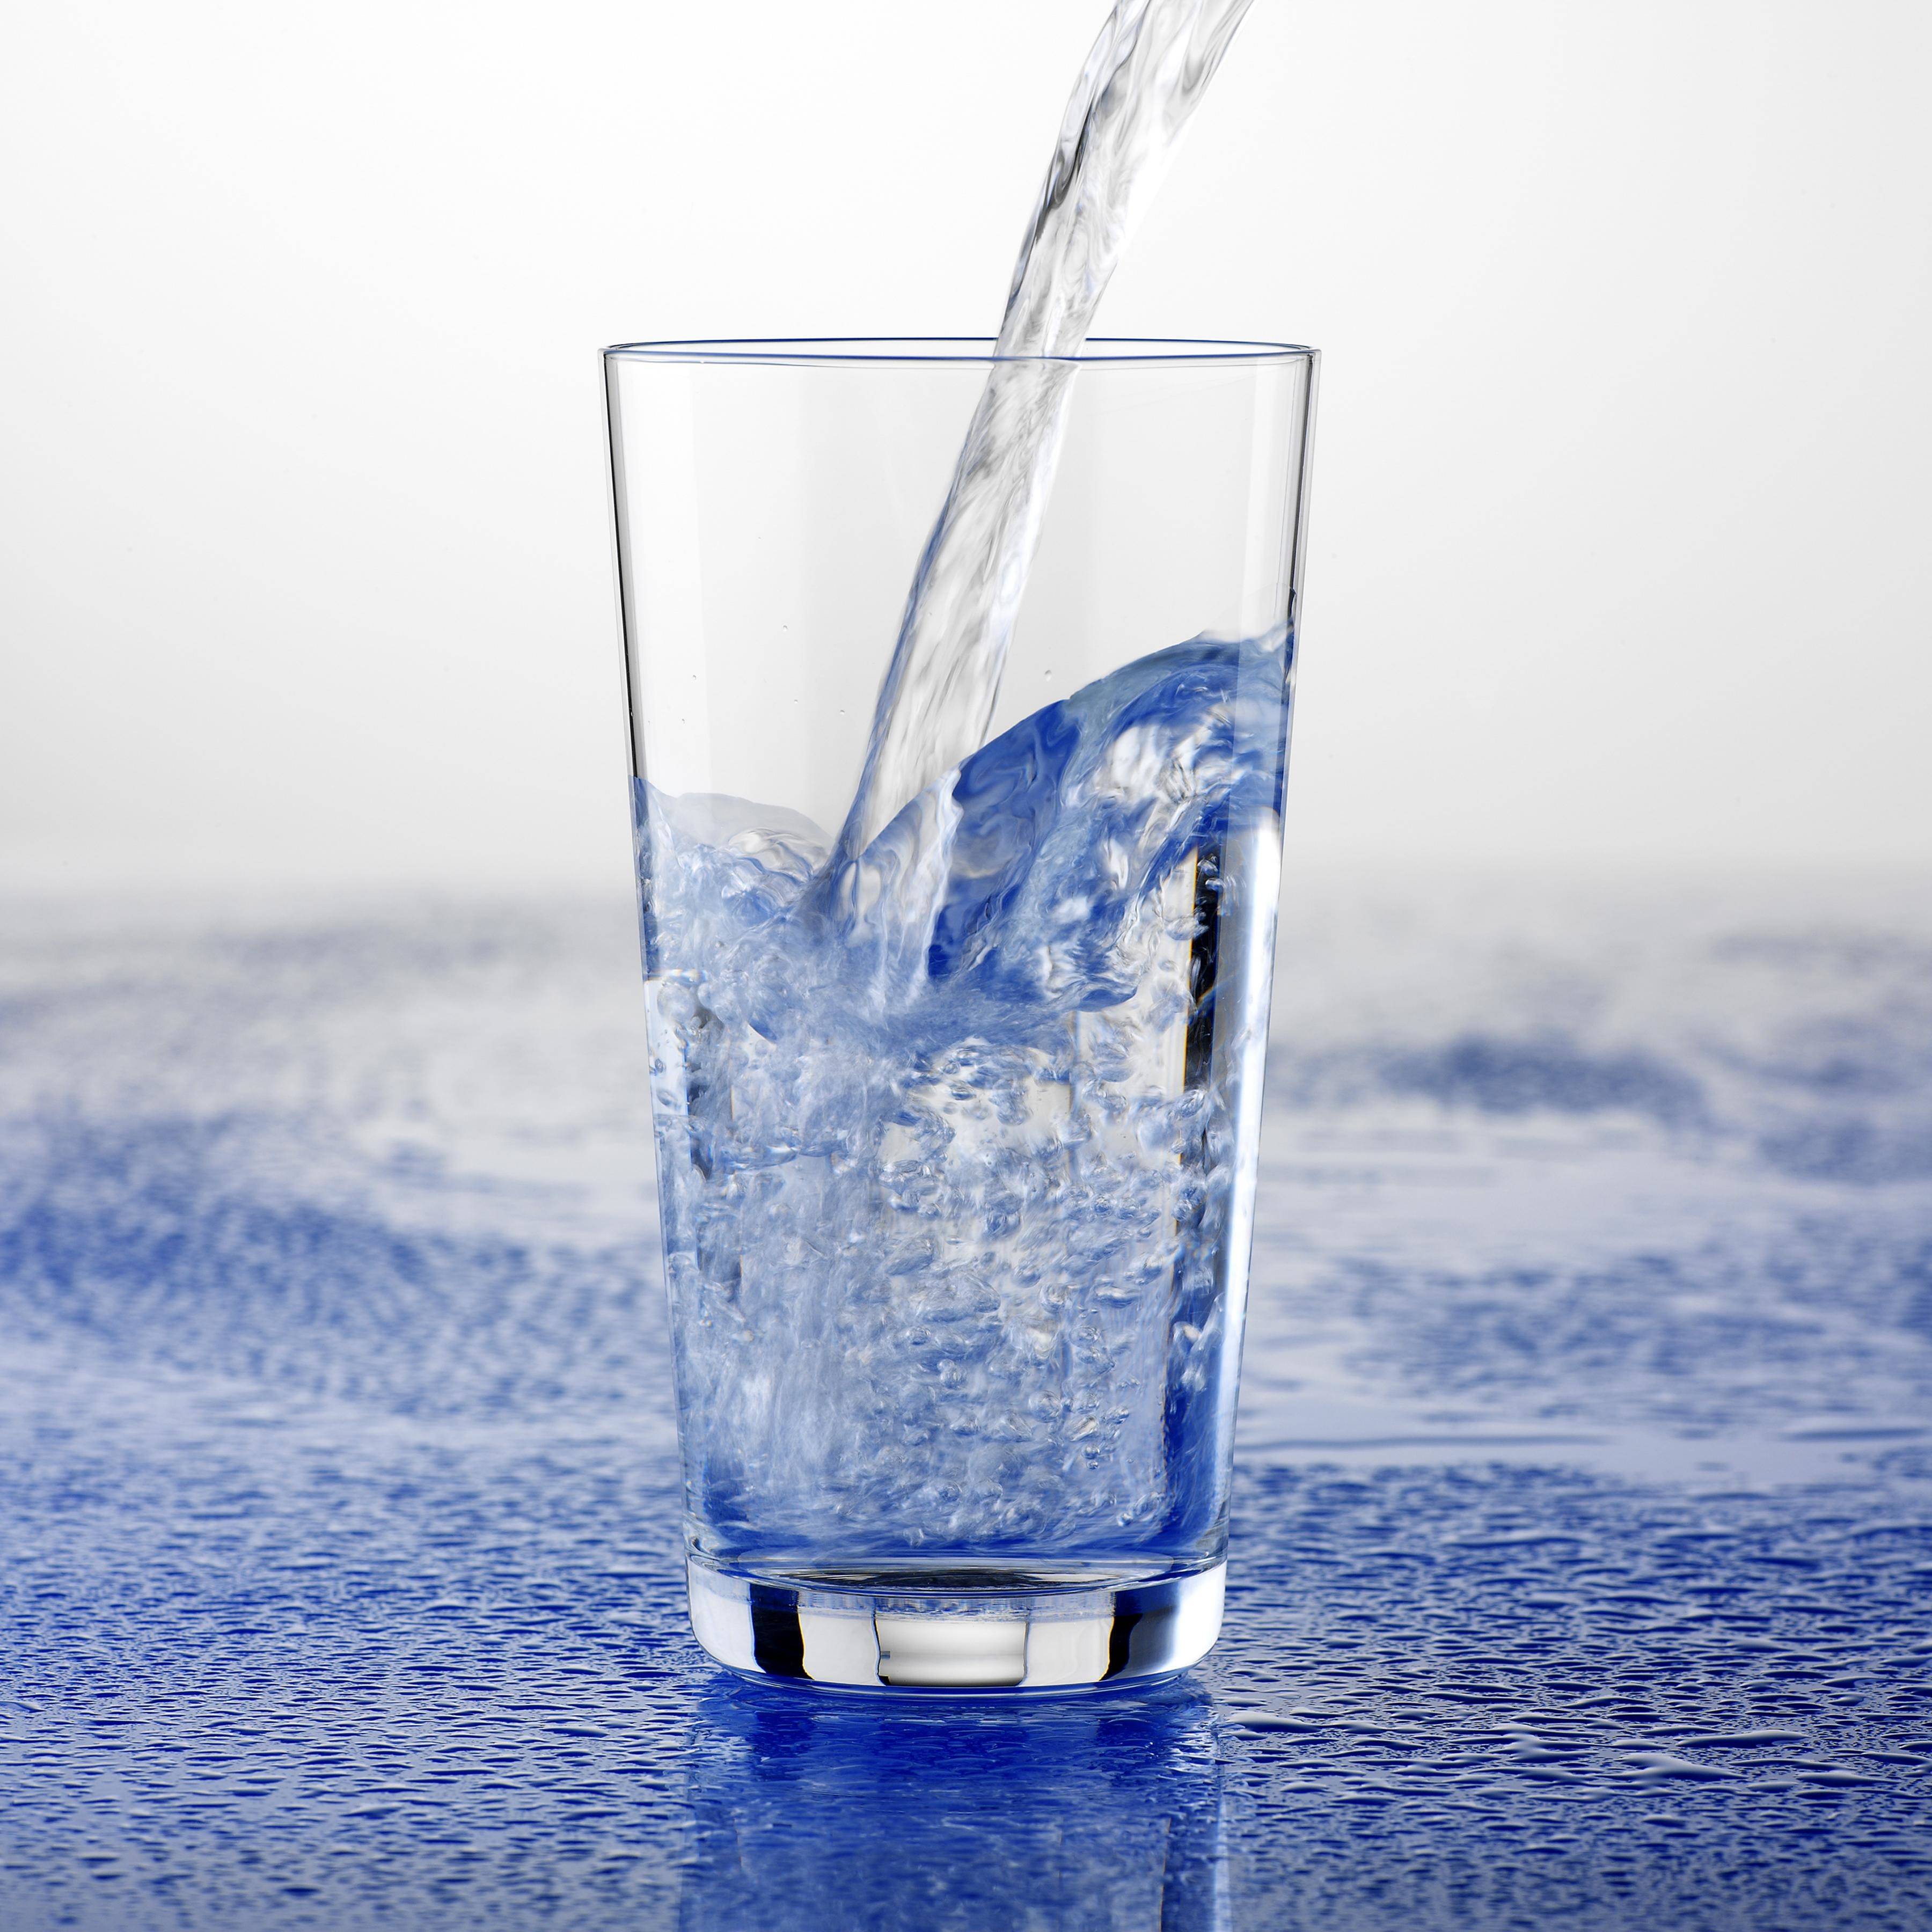 Картинки питьевой. Стакан воды. Чистая вода. Вода питьевая в стакане. Красивые стаканы для воды.